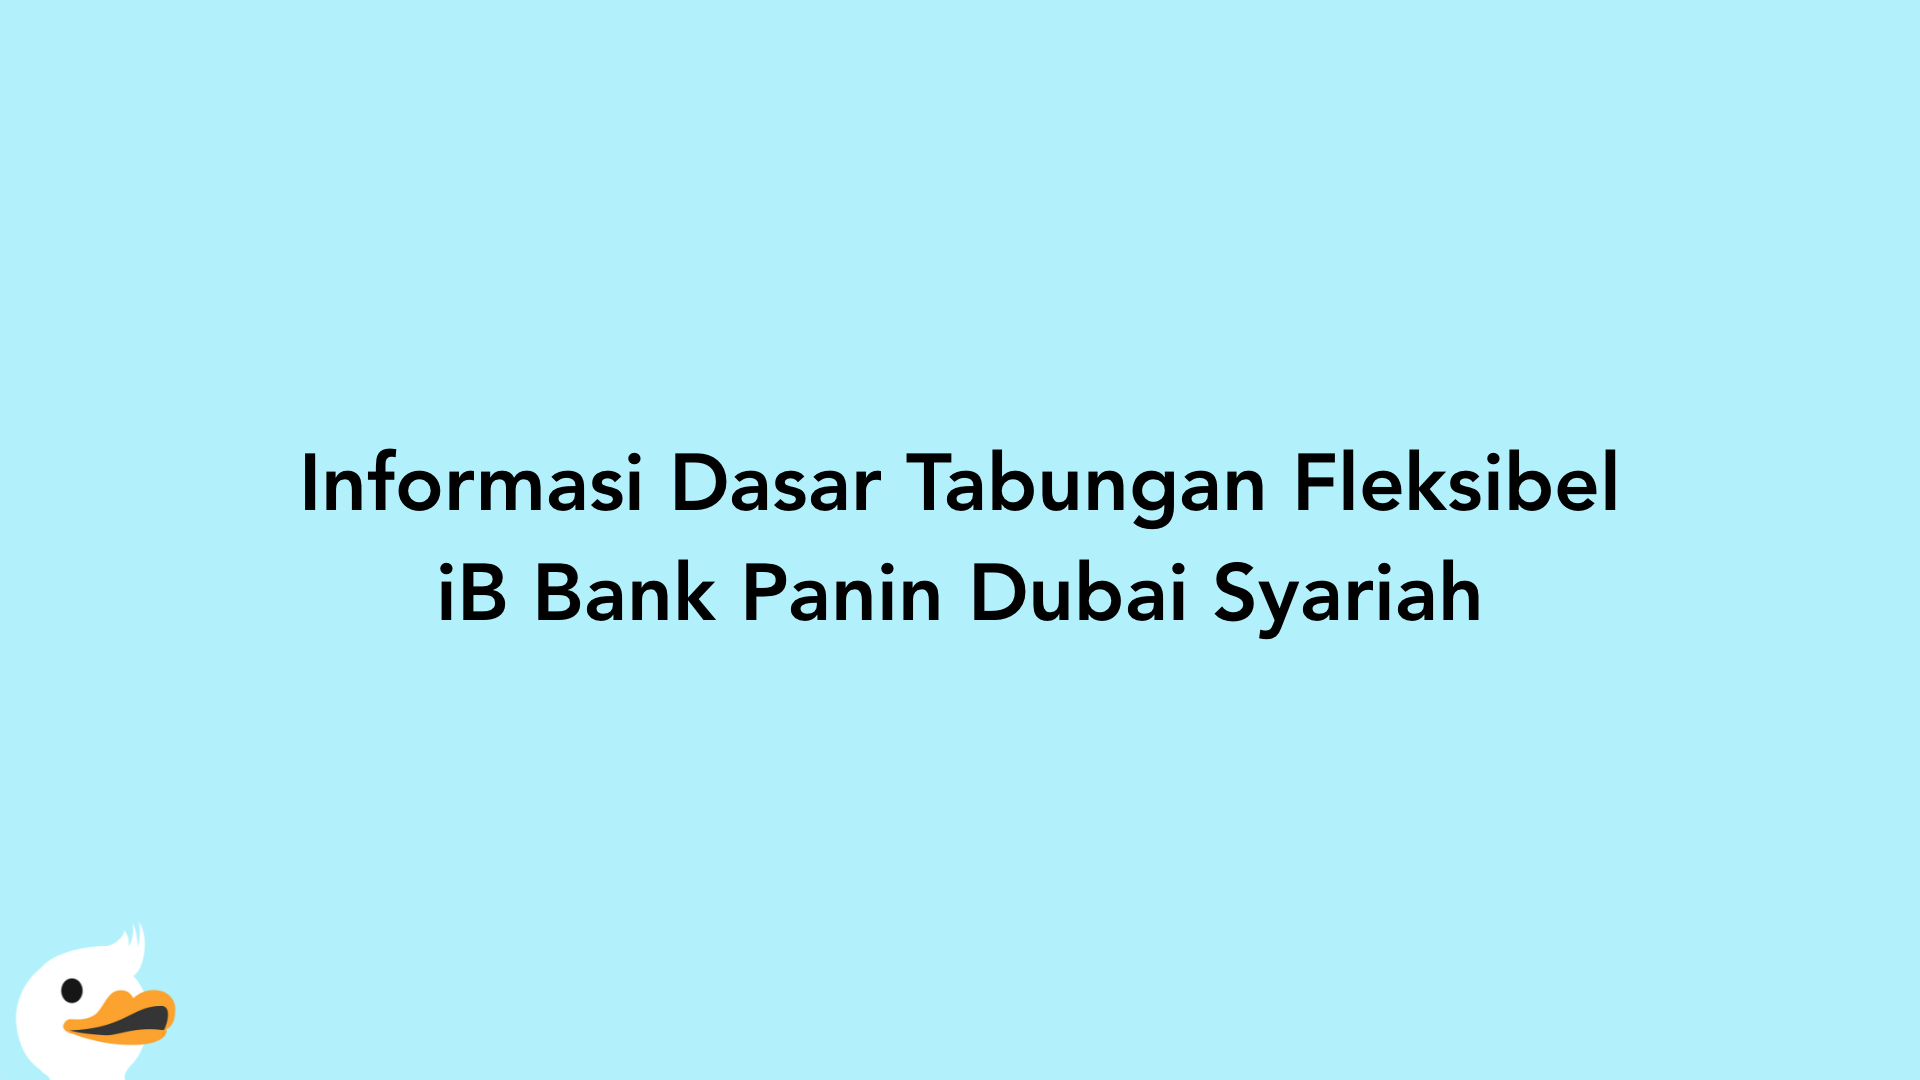 Informasi Dasar Tabungan Fleksibel iB Bank Panin Dubai Syariah